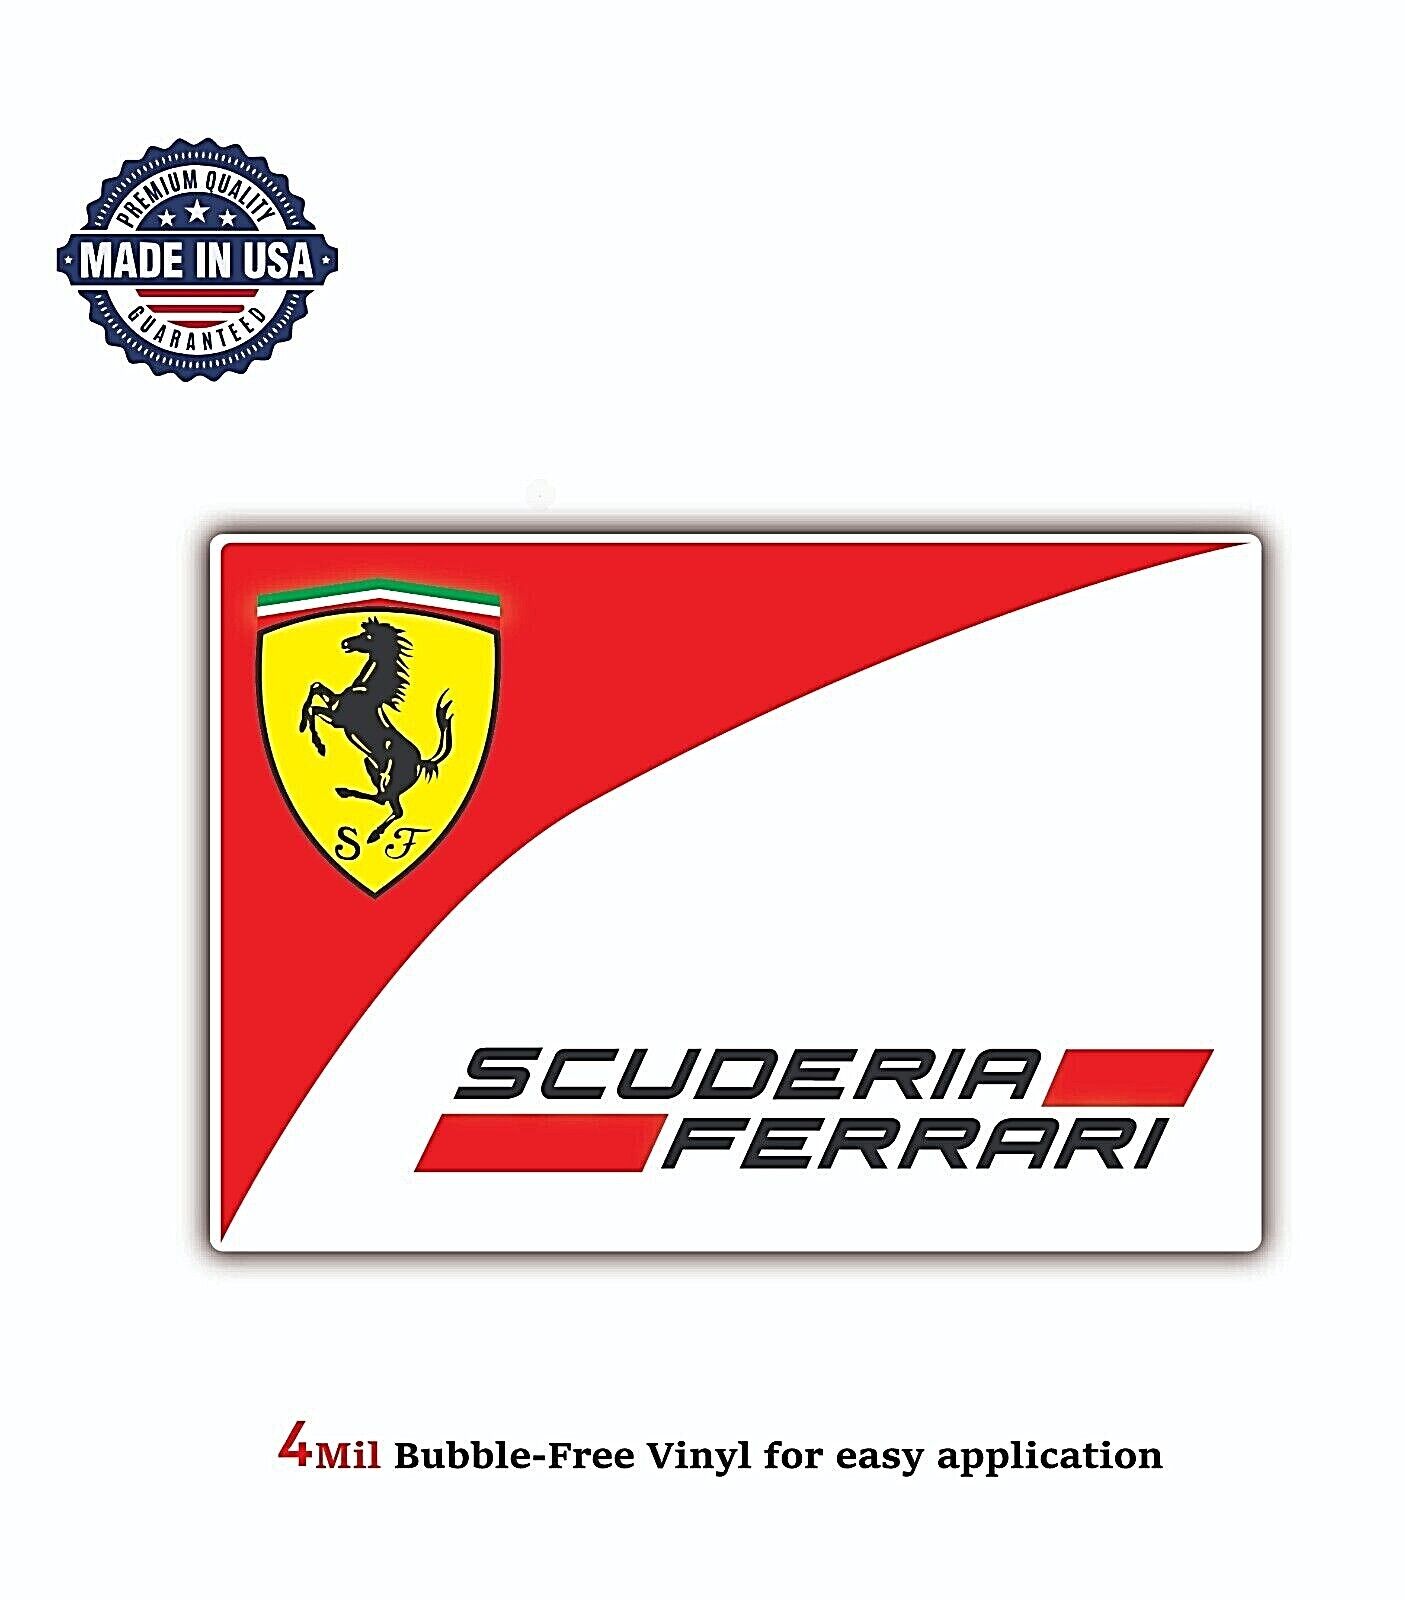 SCUDERIA FERRARI ITALY RACE RETRO LOGO VINYL DECAL STICKER CAR 4MIL BUBBLE FREE